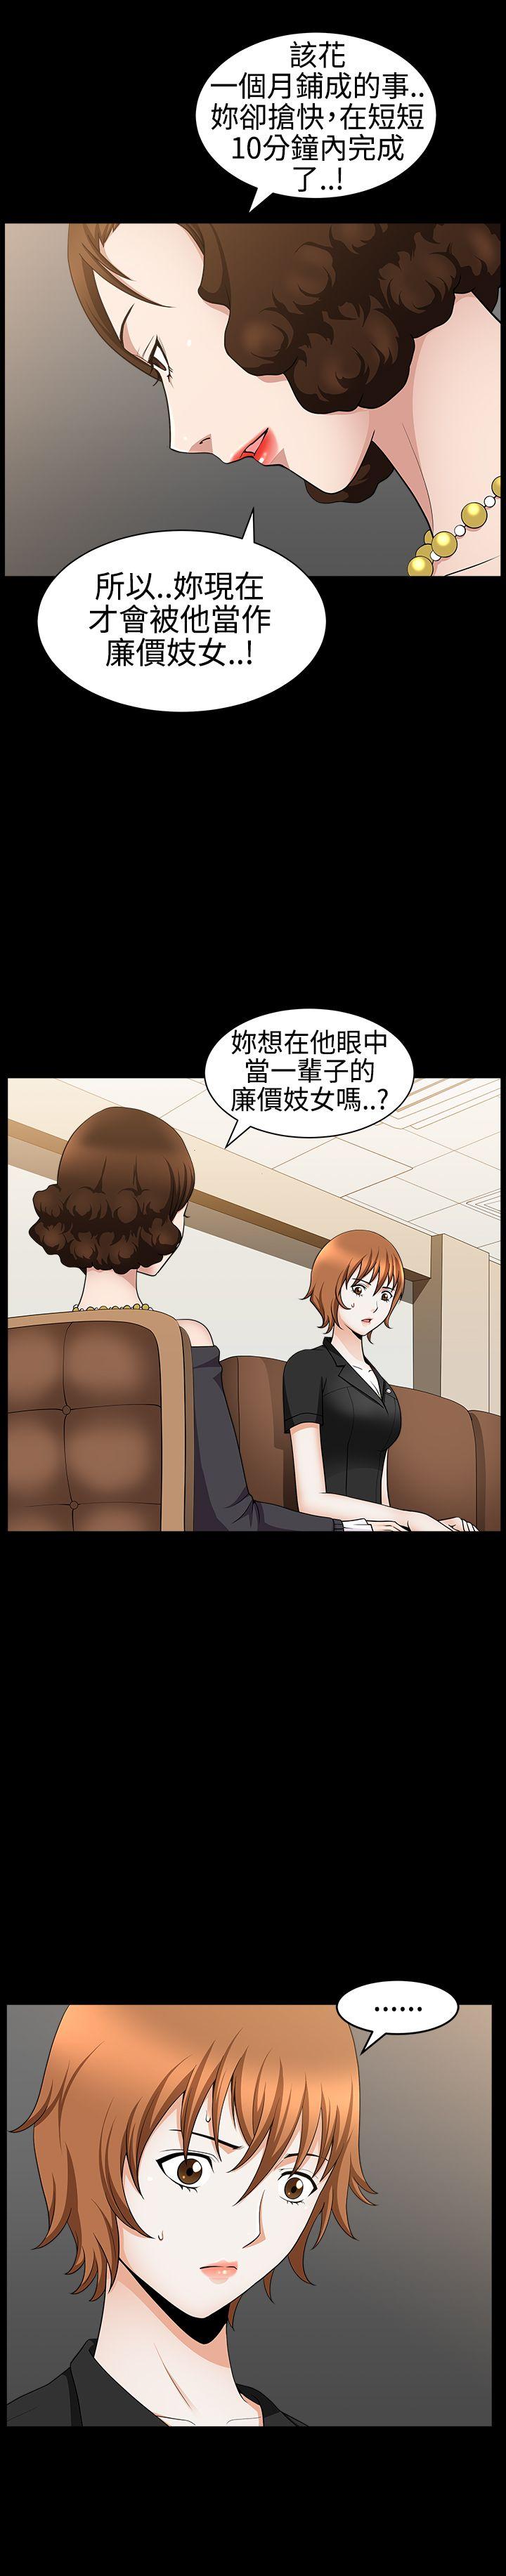 韩国污漫画 人妻性解放3:粗糙的手 第29话 31